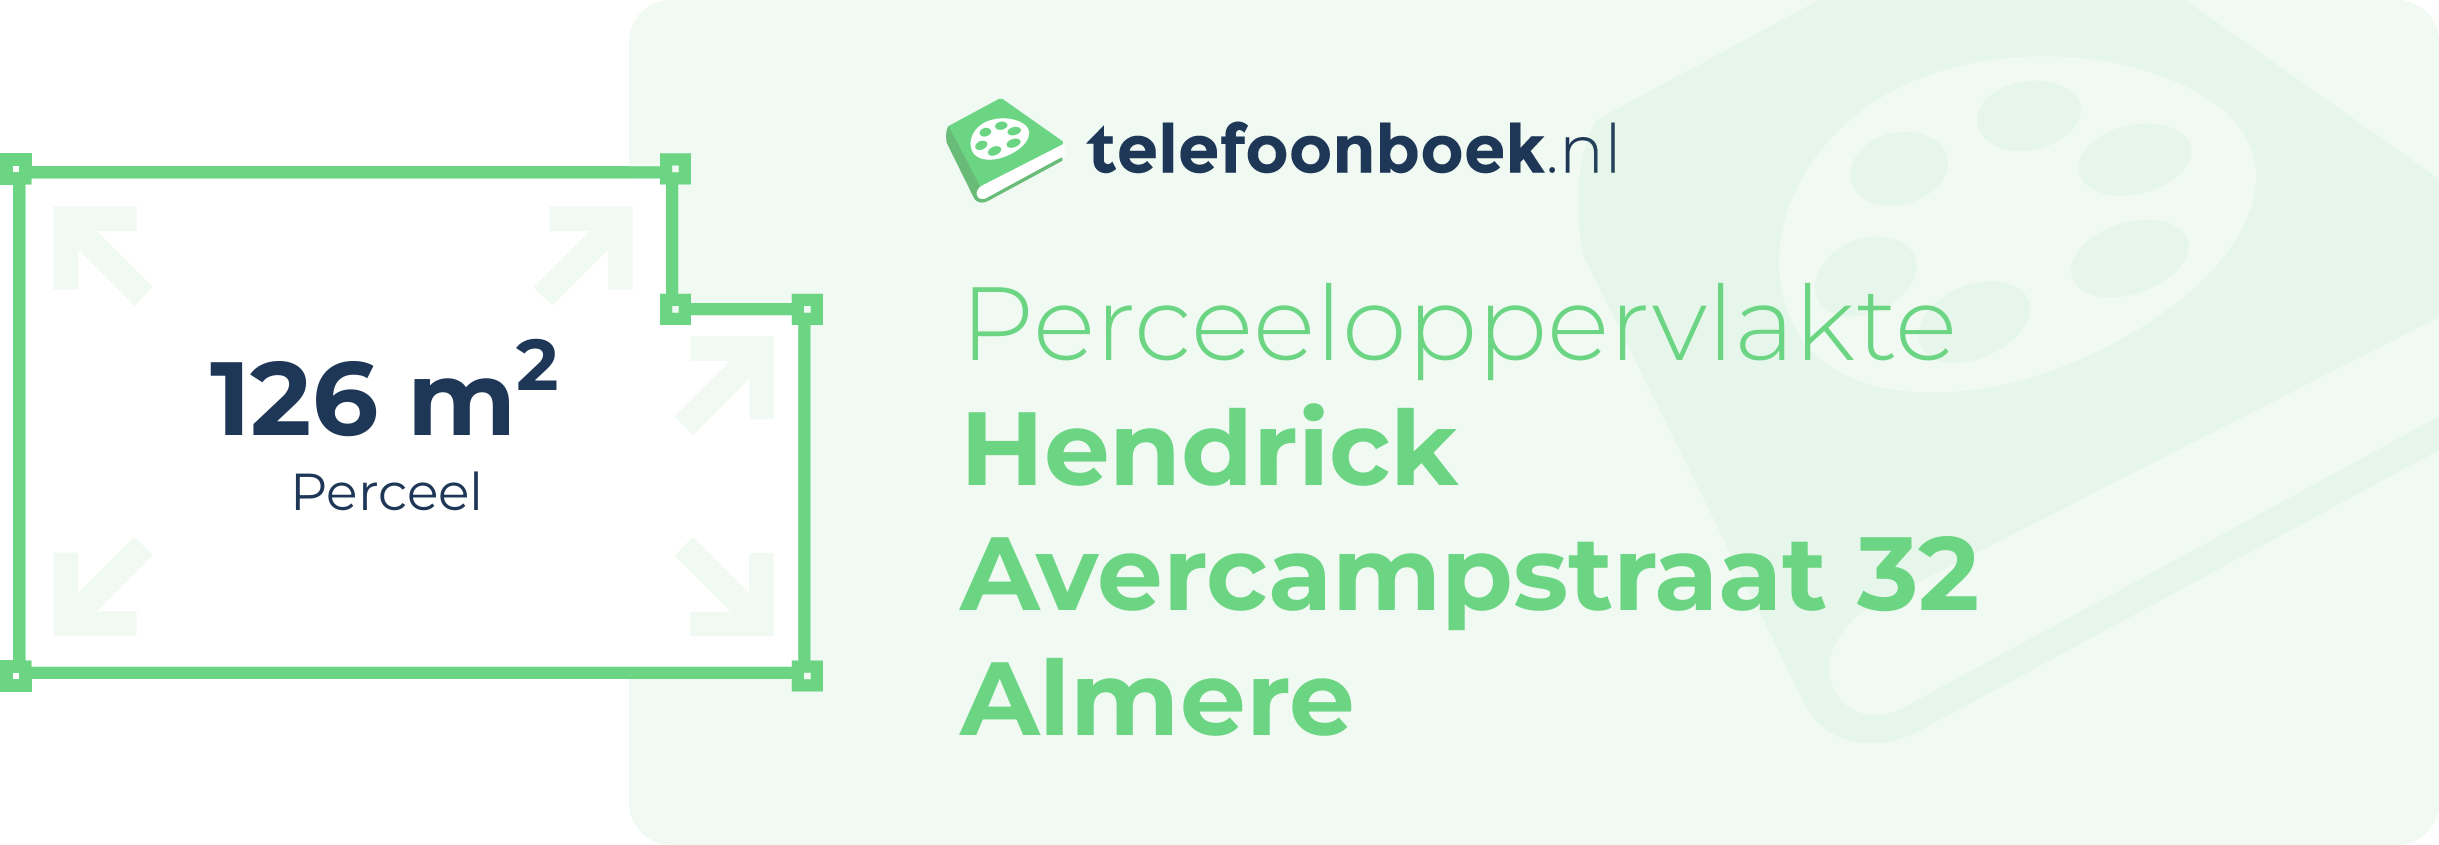 Perceeloppervlakte Hendrick Avercampstraat 32 Almere